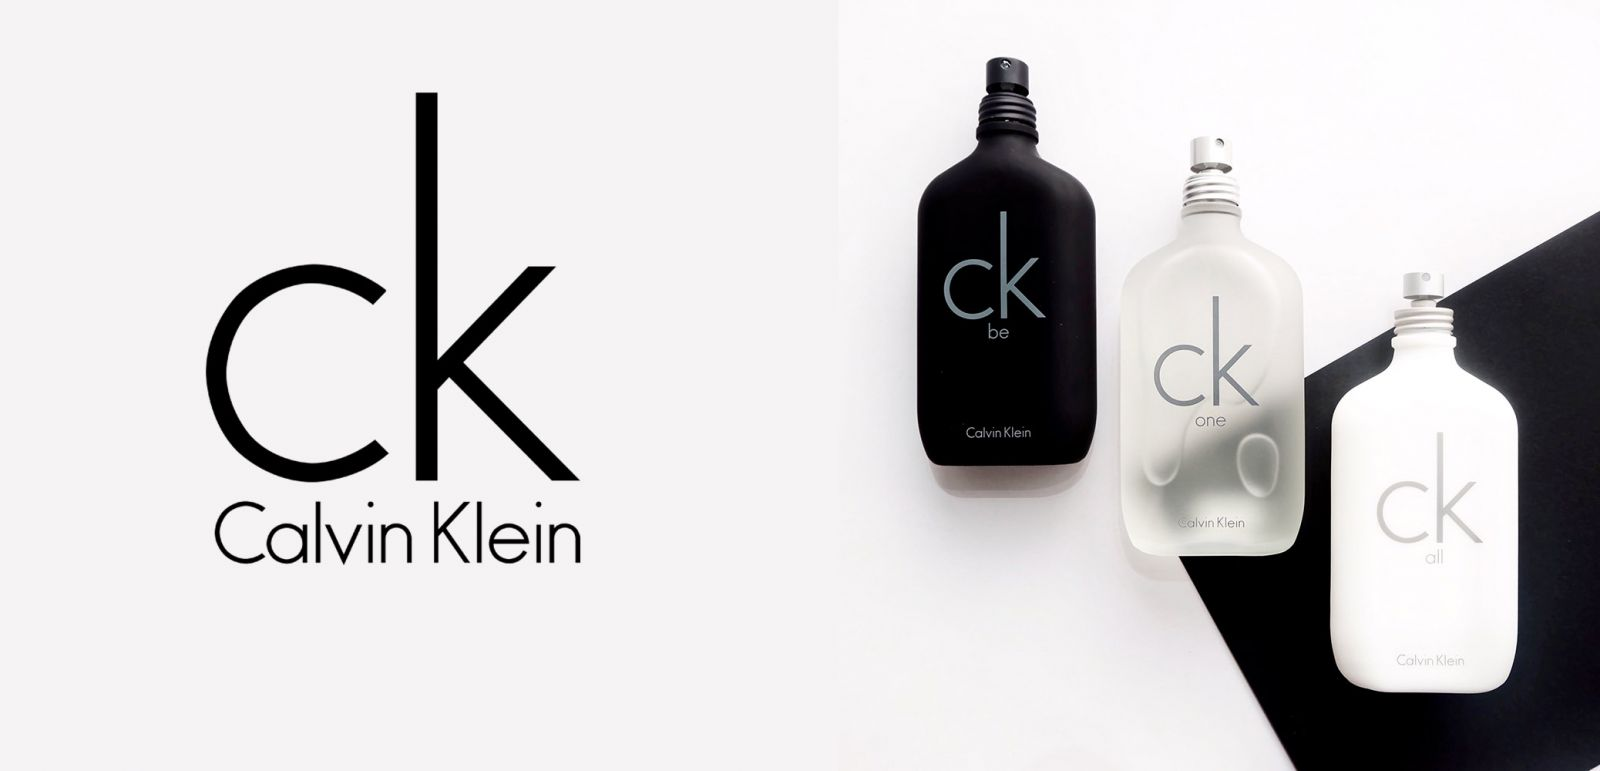 Calvin Klein liên tục tạo dấu ấn với nhiều dòng nước hoa nổi tiếng, và nhận được nhiều phản hồi tích cực